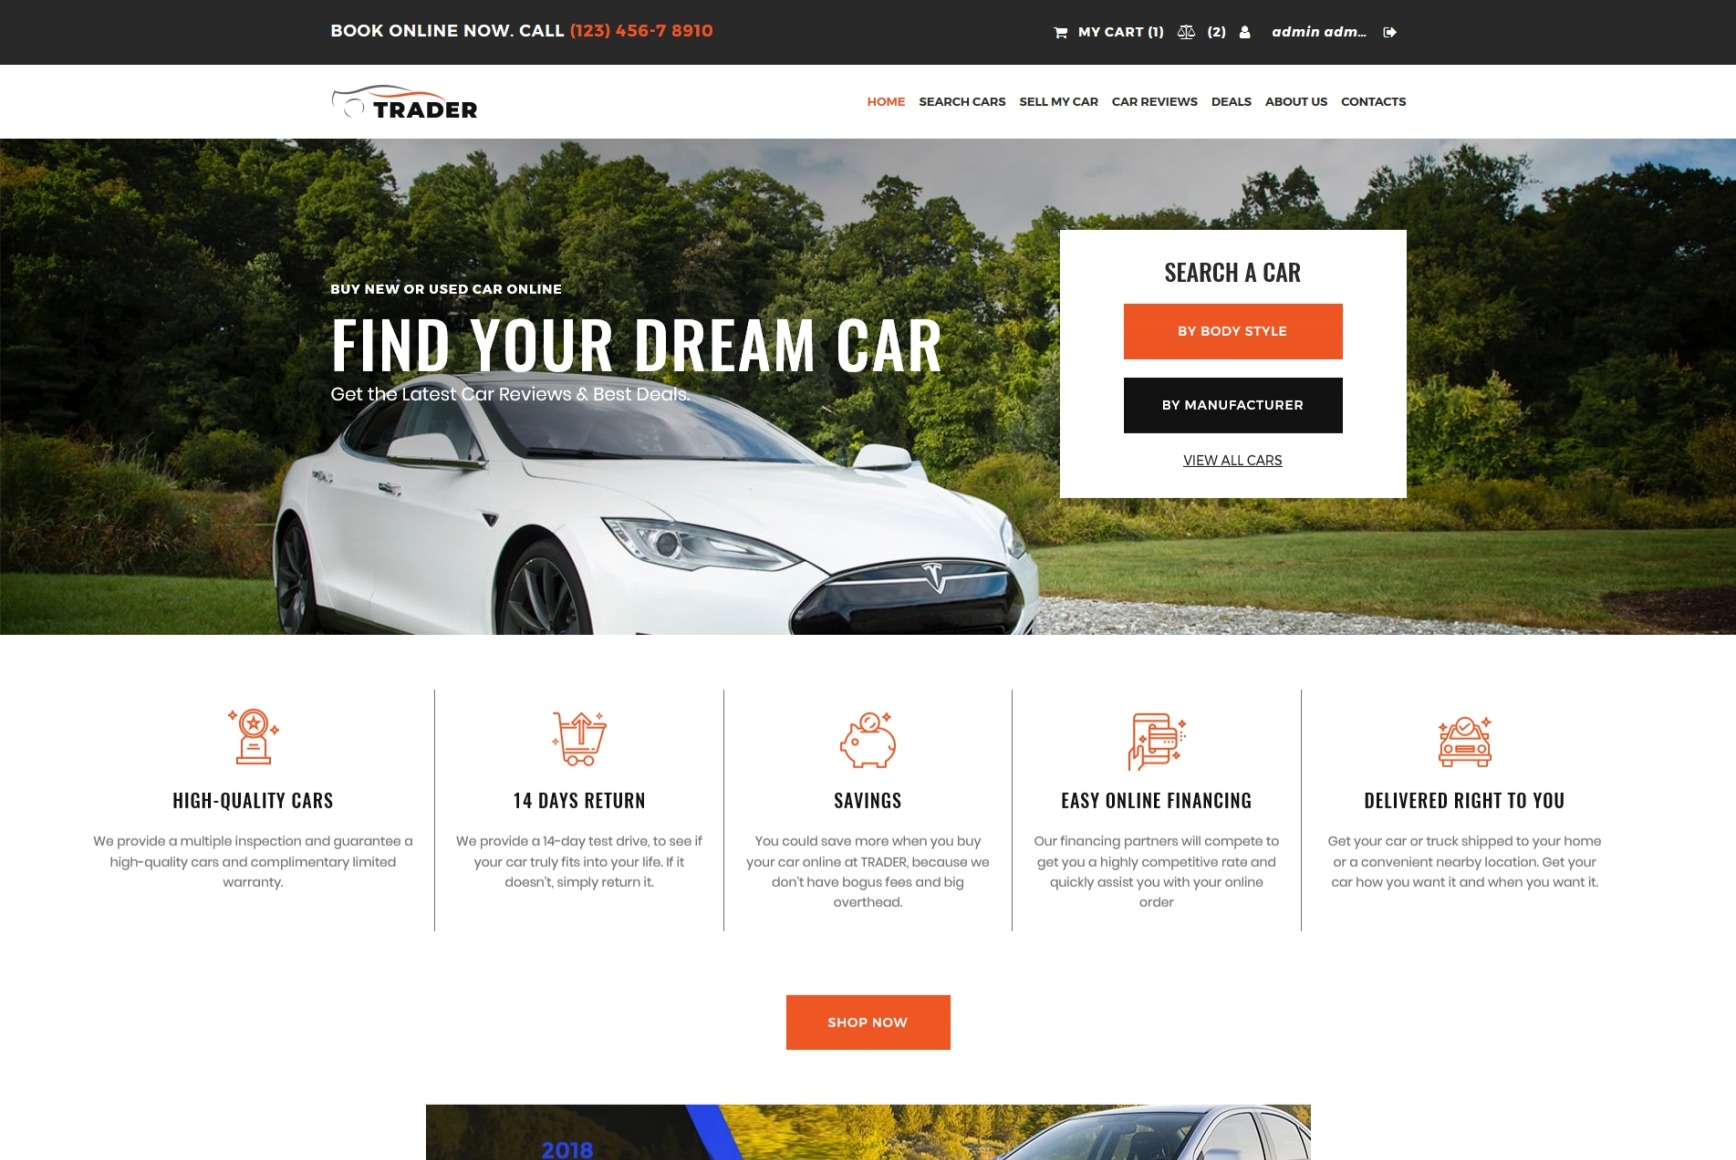 owner car selling websites